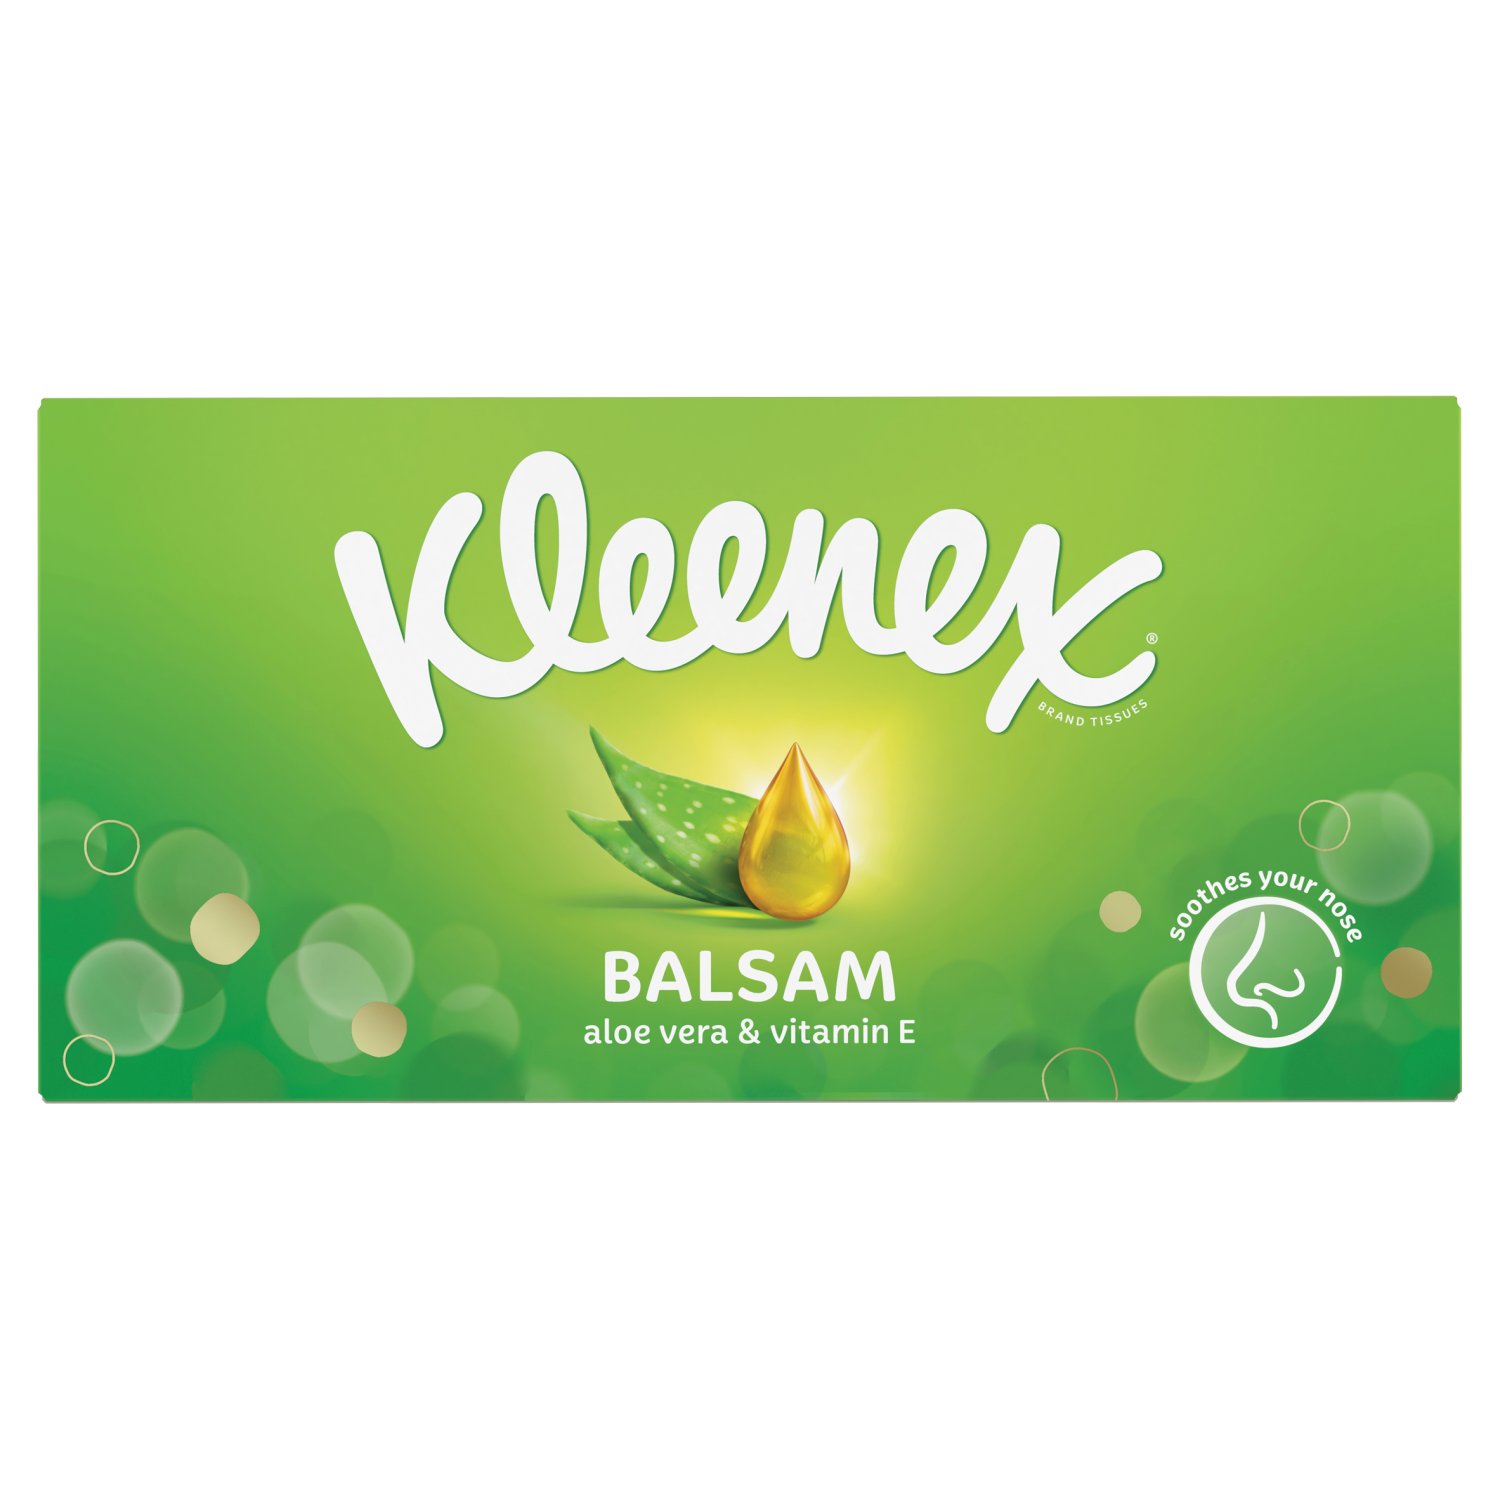 Kleenex Balsam Regular Facial Tissue 64 Sheet (64 Sheets)